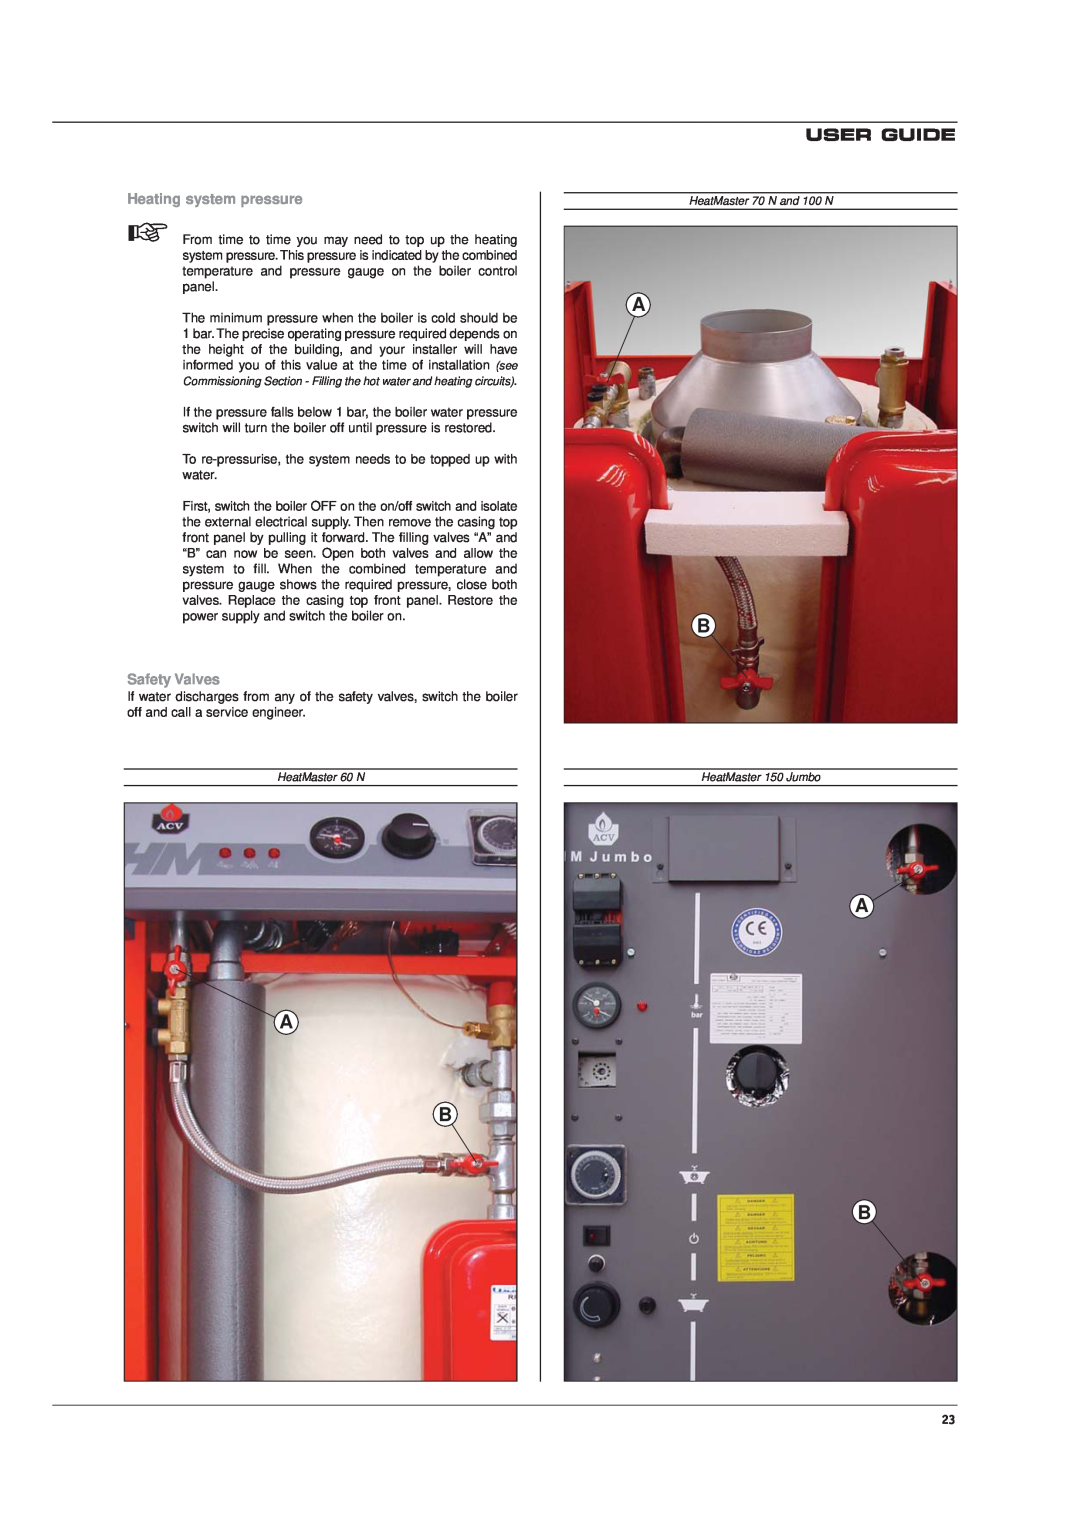 Heatmaster HM 60 N, 150 JUMBO, 100 N, 70 N manual User Guide, Heating system pressure, Safety Valves 